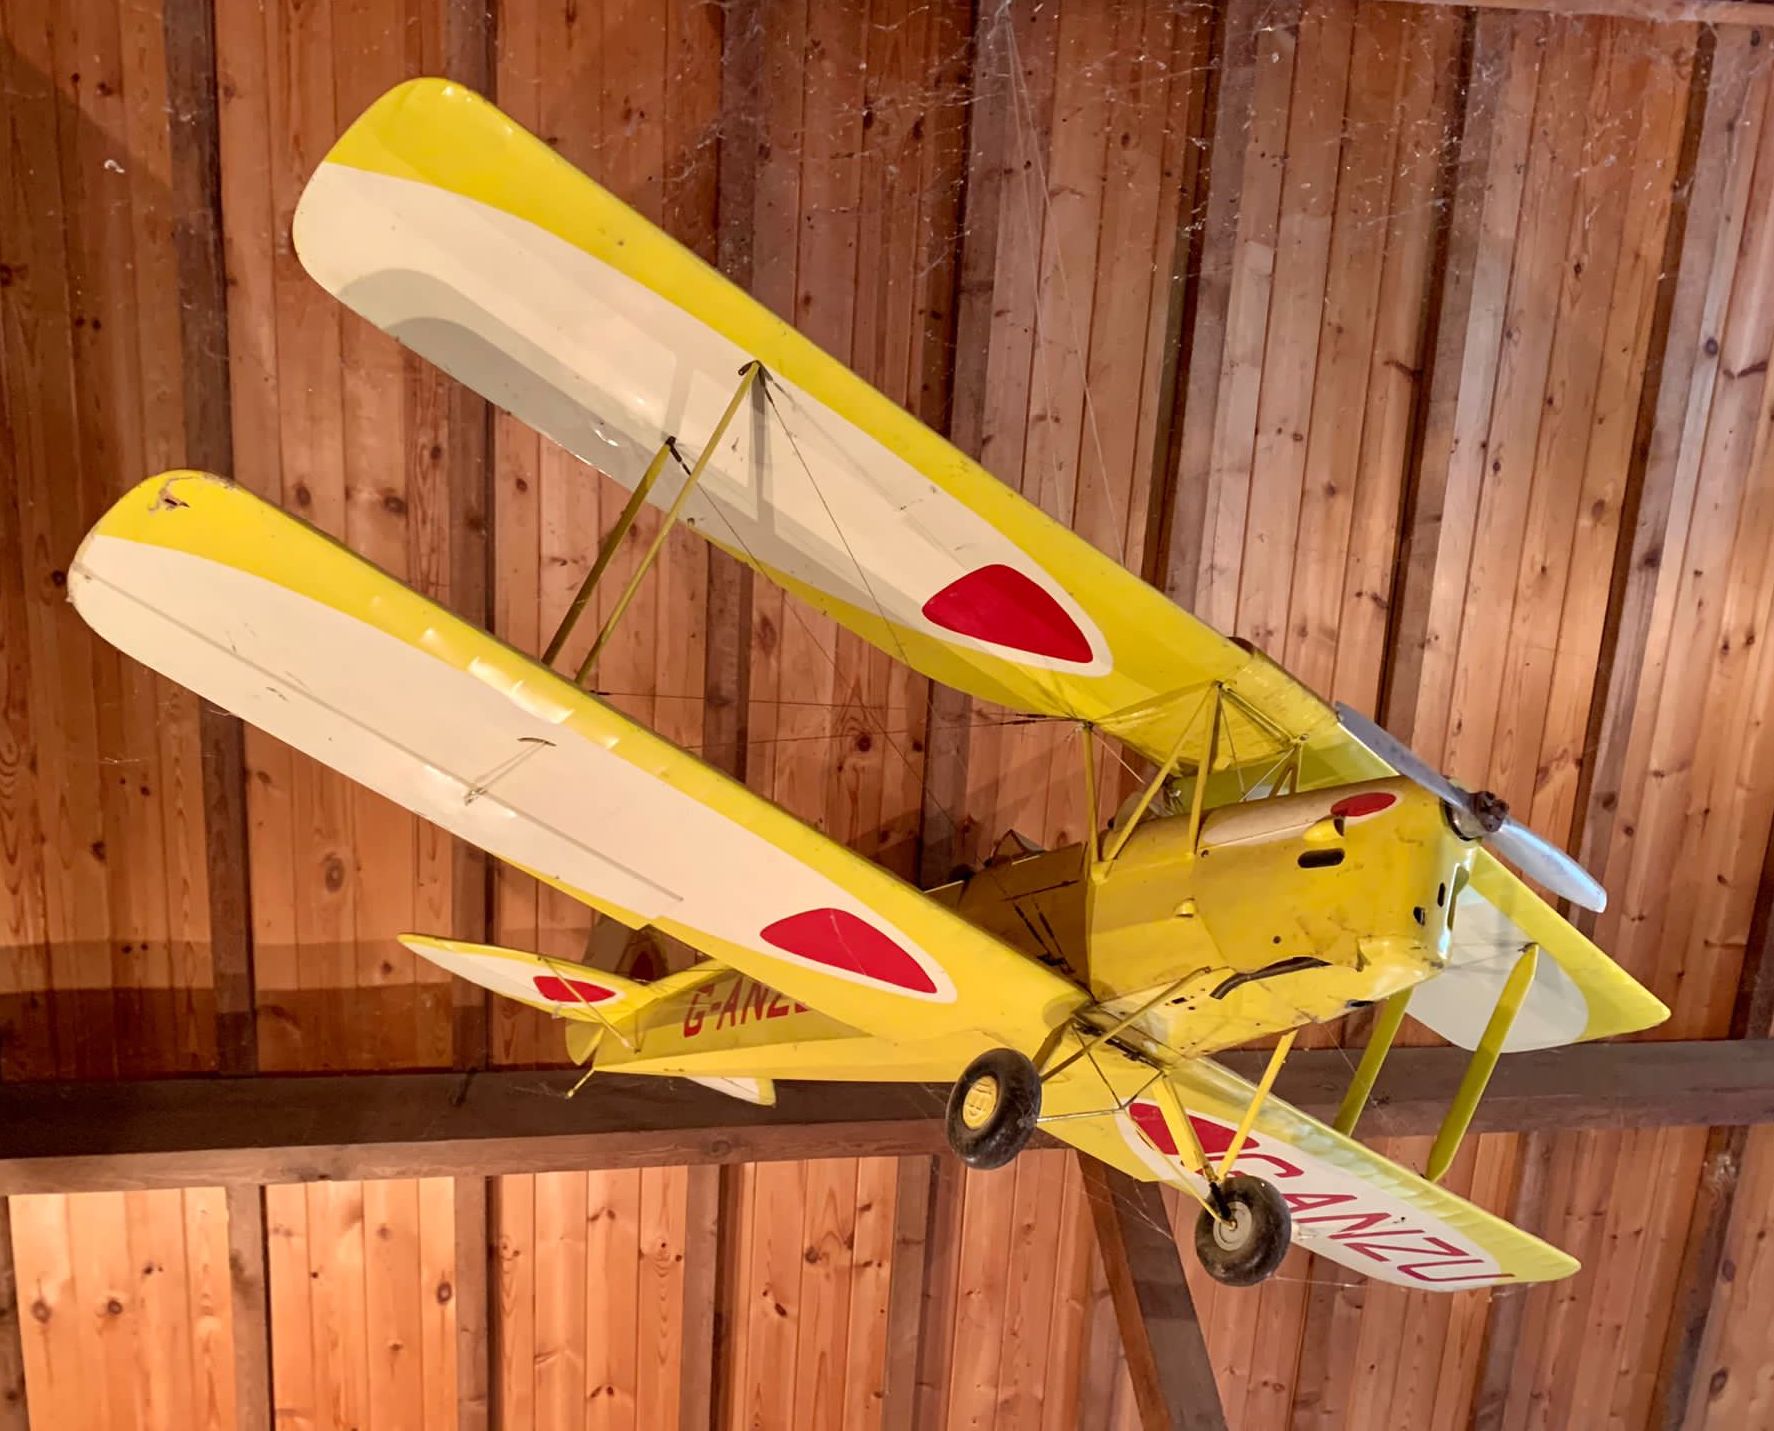 A De Havilland Tiger Moth Reg:- G-ANZU model aeroplane, width 183cm, length 150cm *Please note the sale commences at 9am.